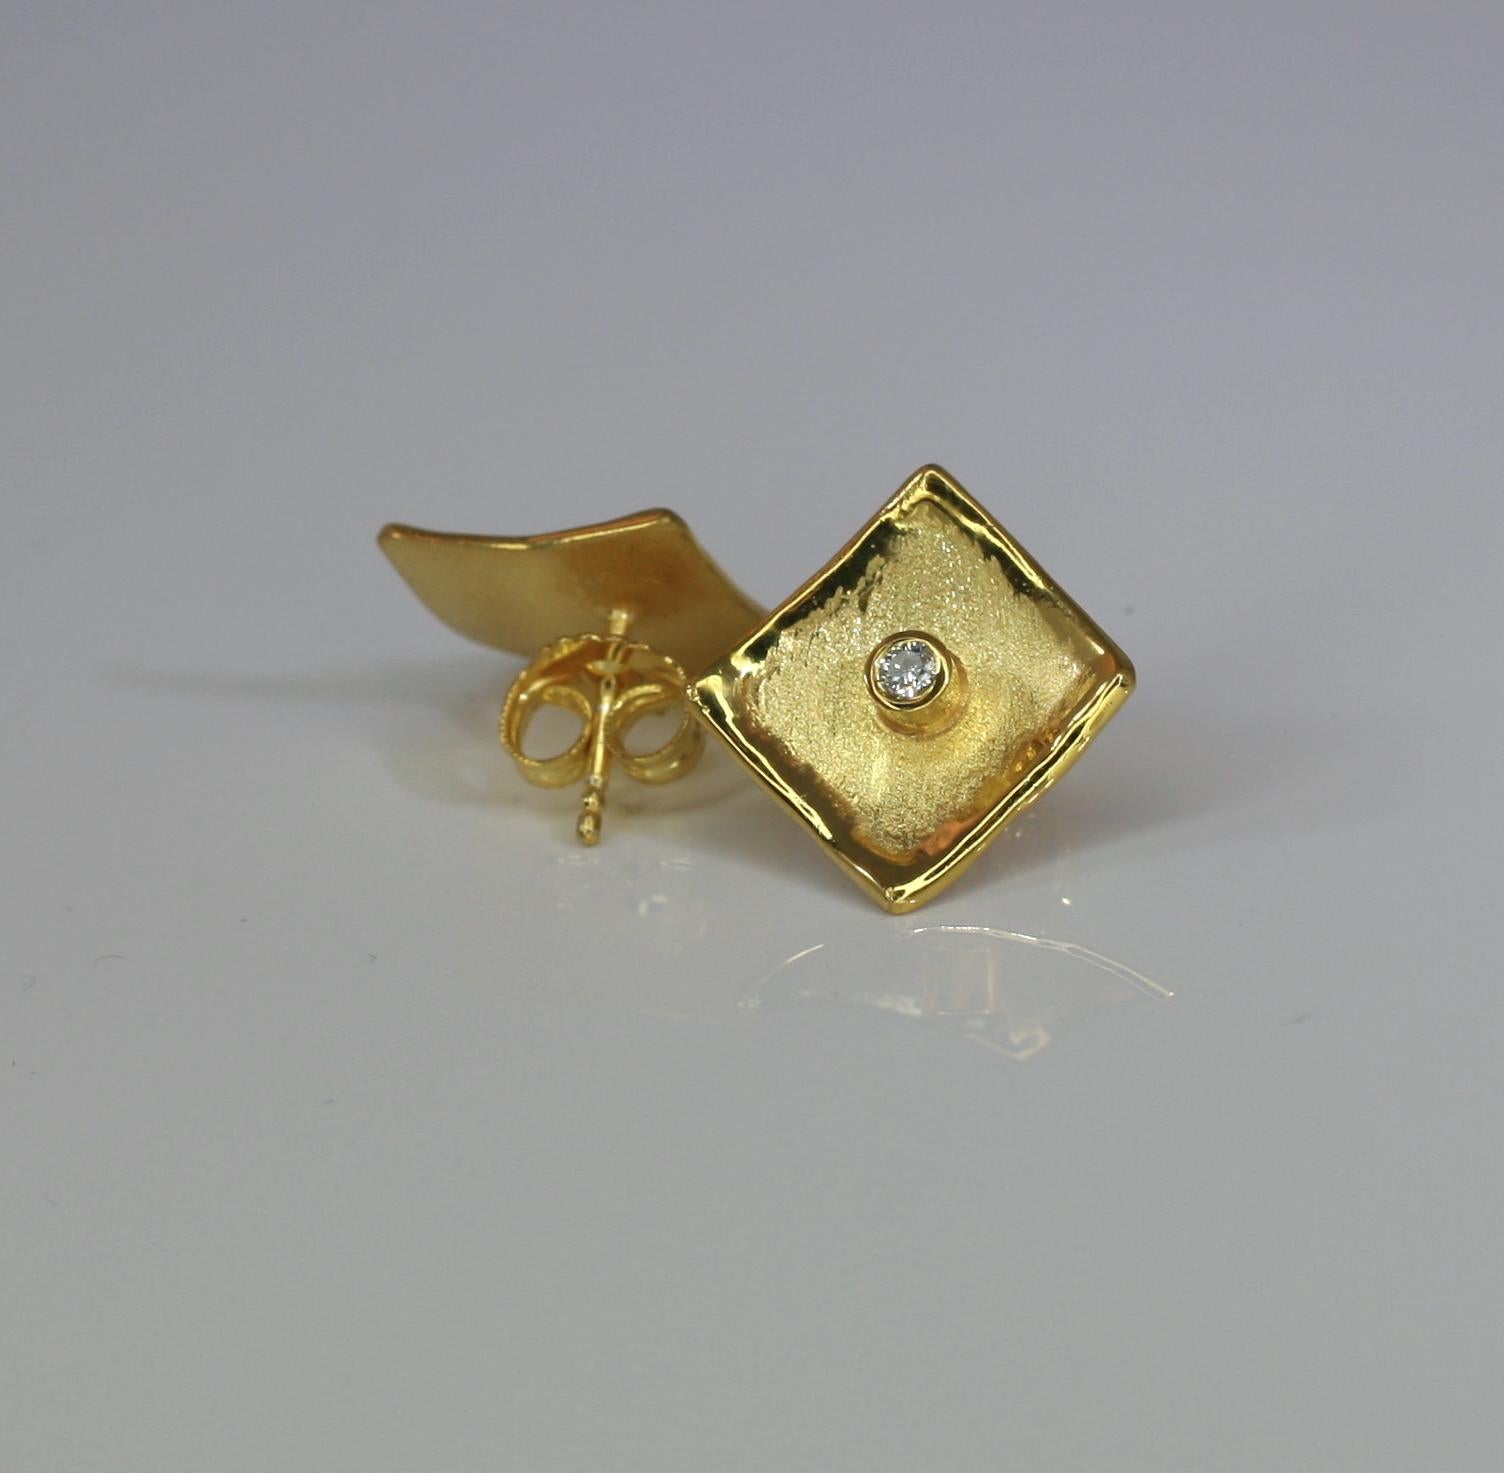 Les clous d'oreilles Yianni Creations en forme de diamant sont tous fabriqués à la main en or jaune 18 carats en Grèce dans notre atelier en utilisant des techniques artisanales anciennes - texture brossée et bords liquides inspirés de la nature.